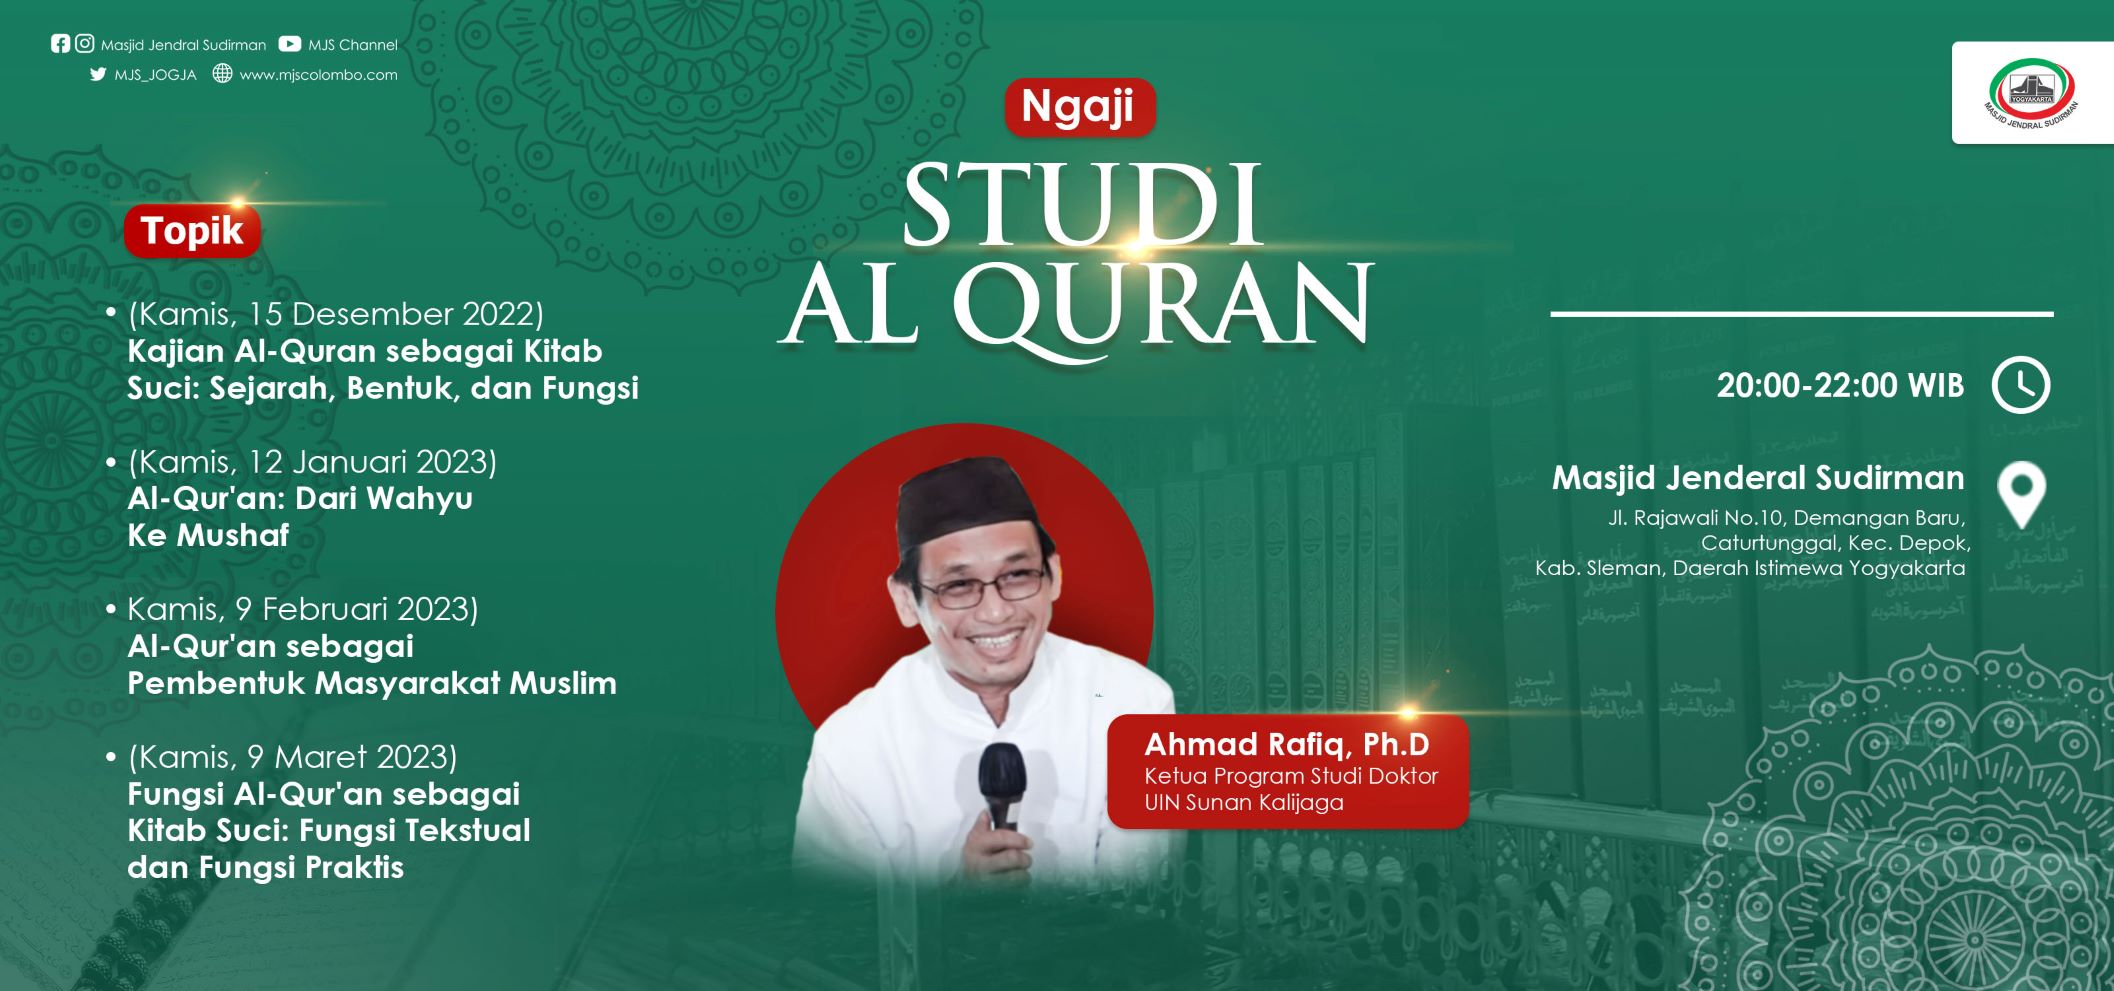 Ngaji Studi Al-Qur'an